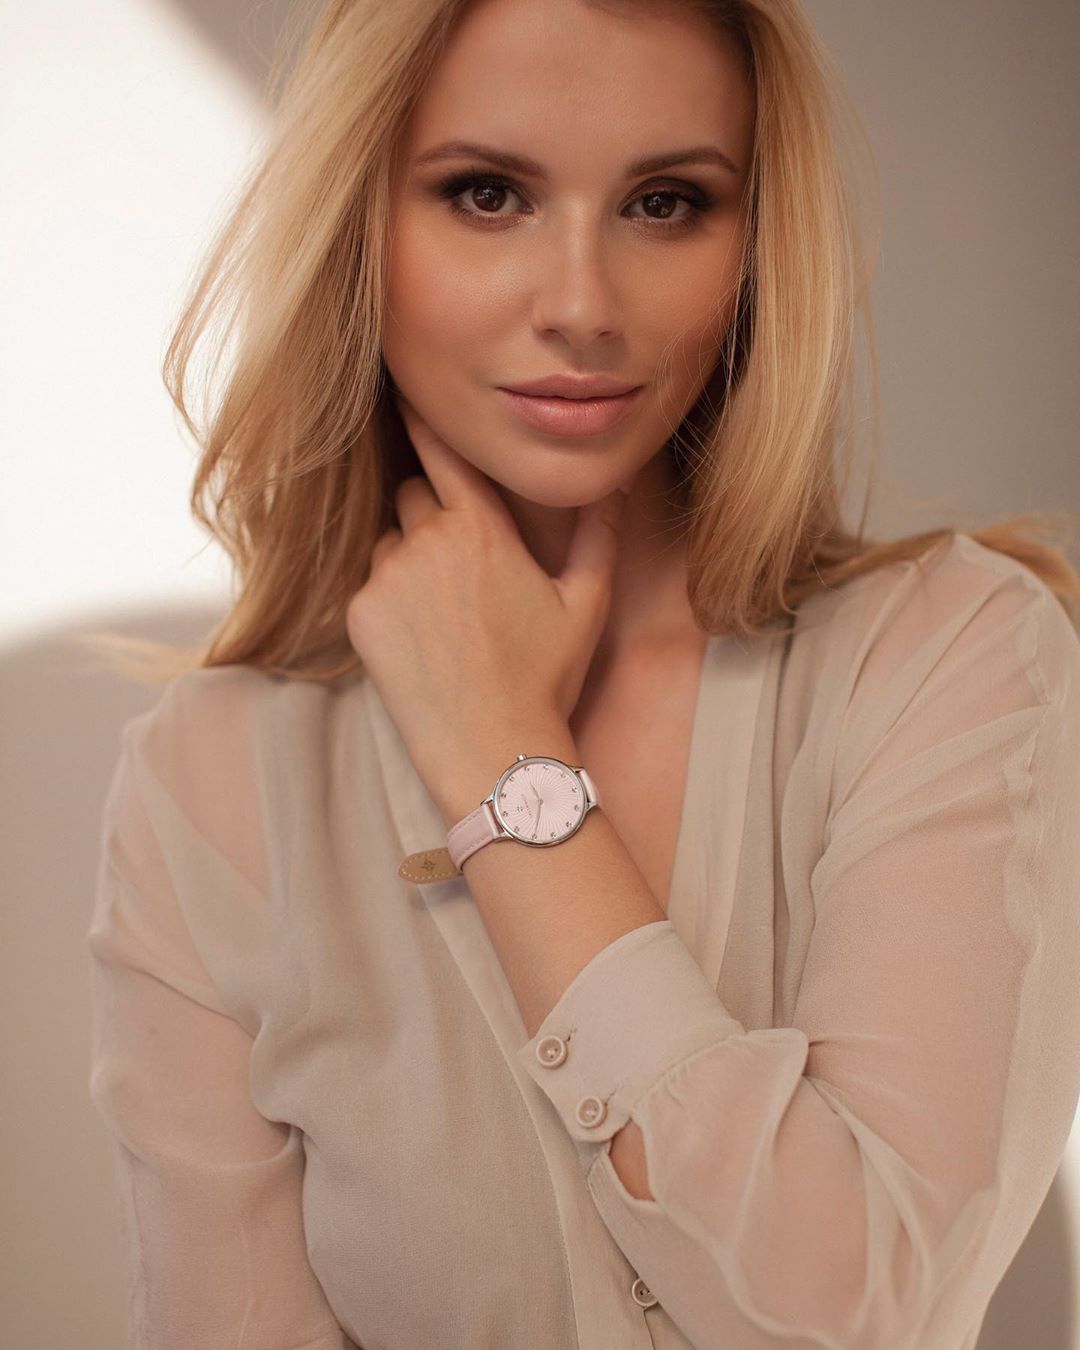 Супер-модные часы из коллекции Wind в пастельных мягких тонах - идеальный летний предмет гардероба. 